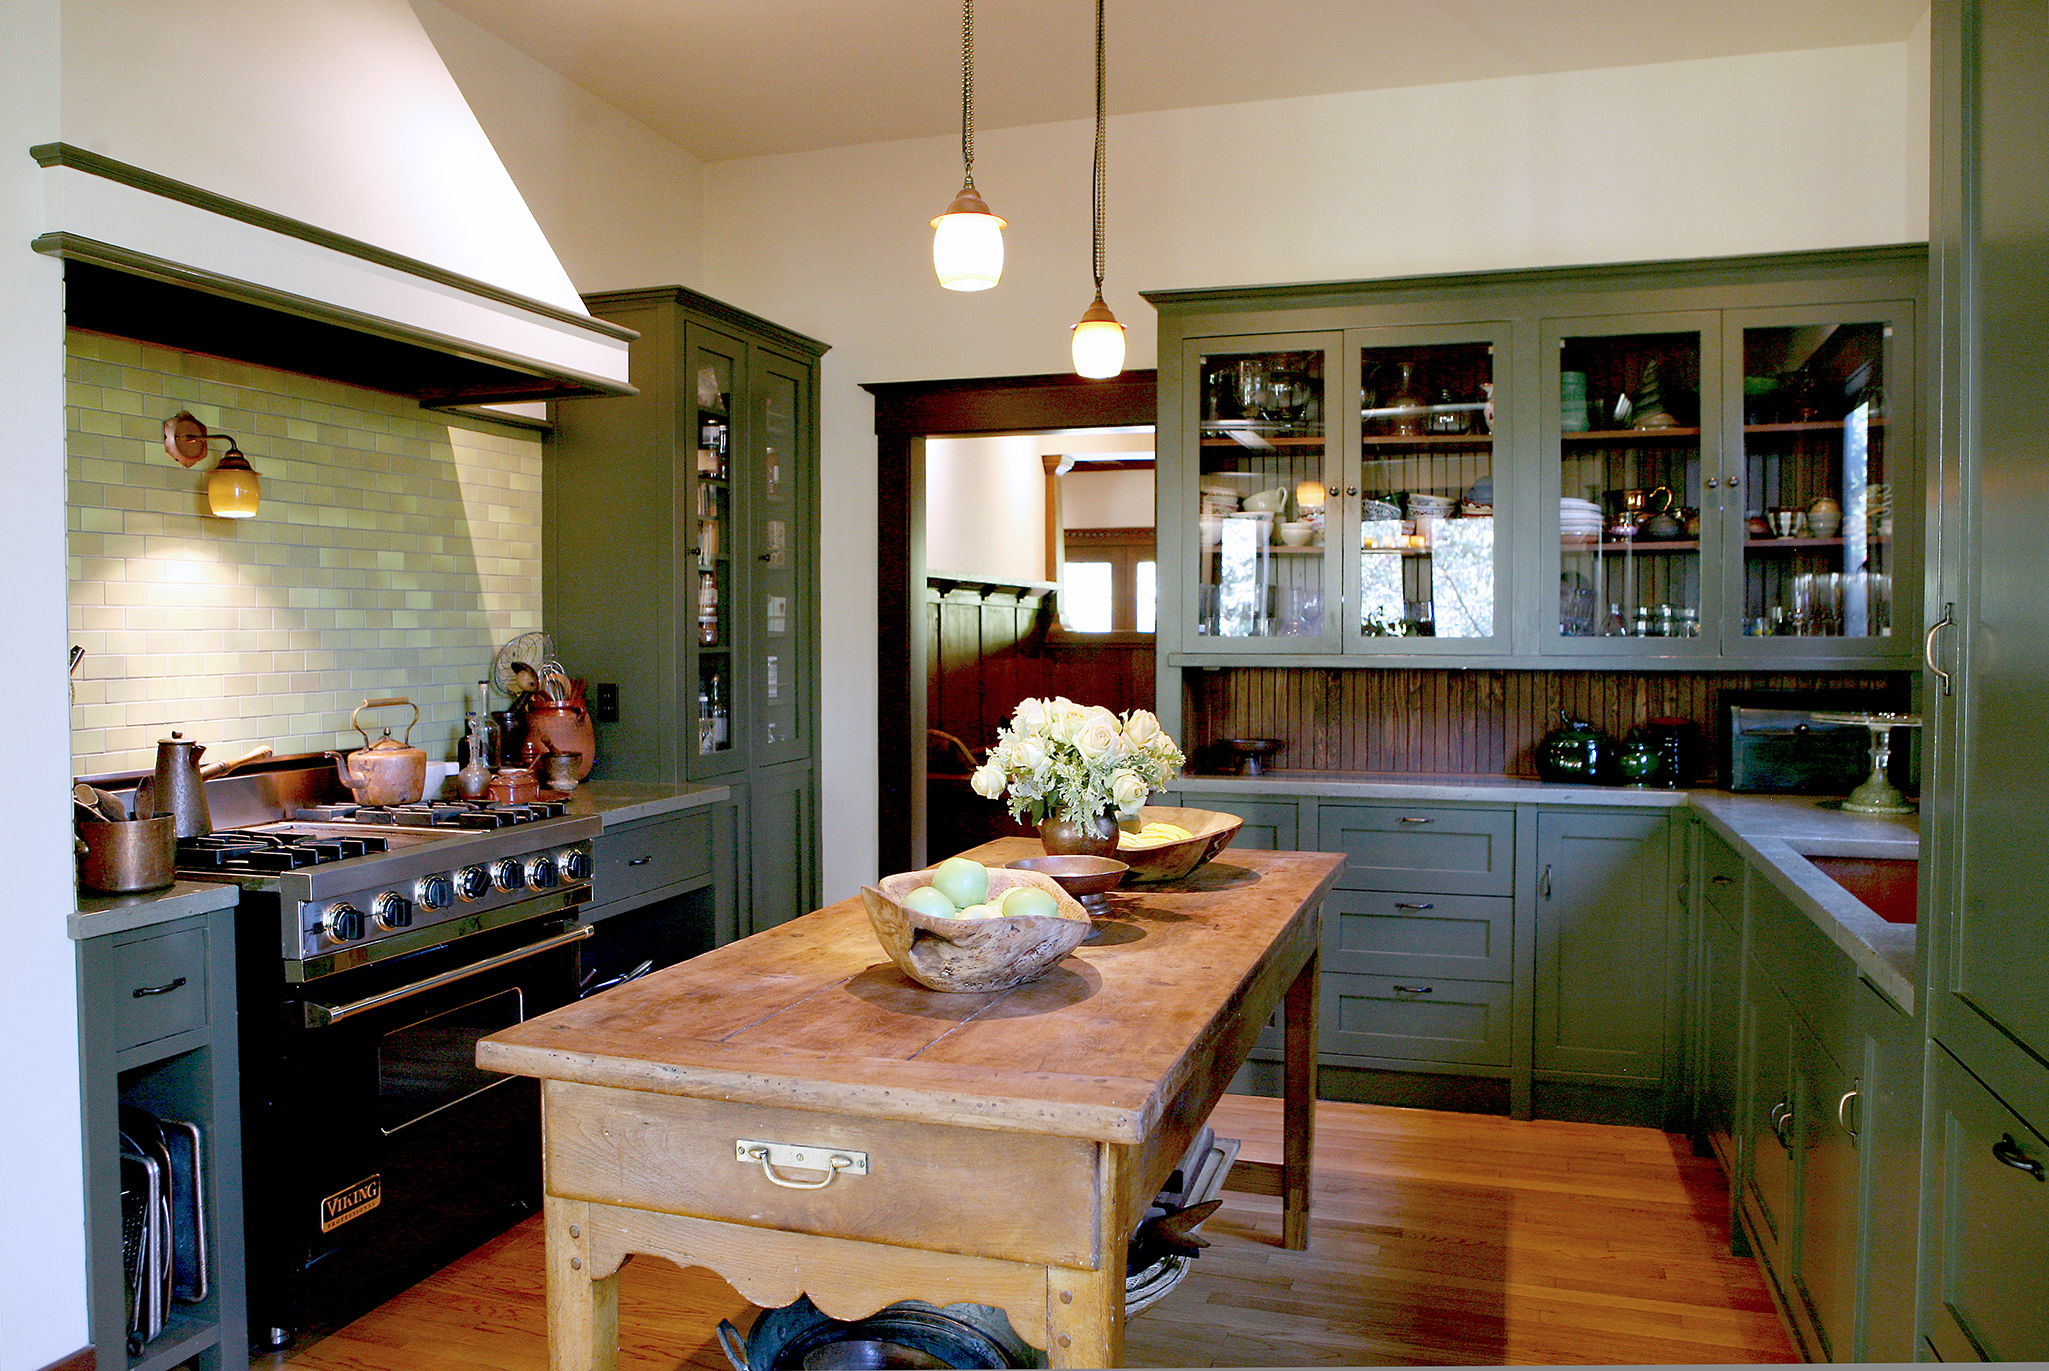 alice waters kitchen design architect craftsman artisian kitchen